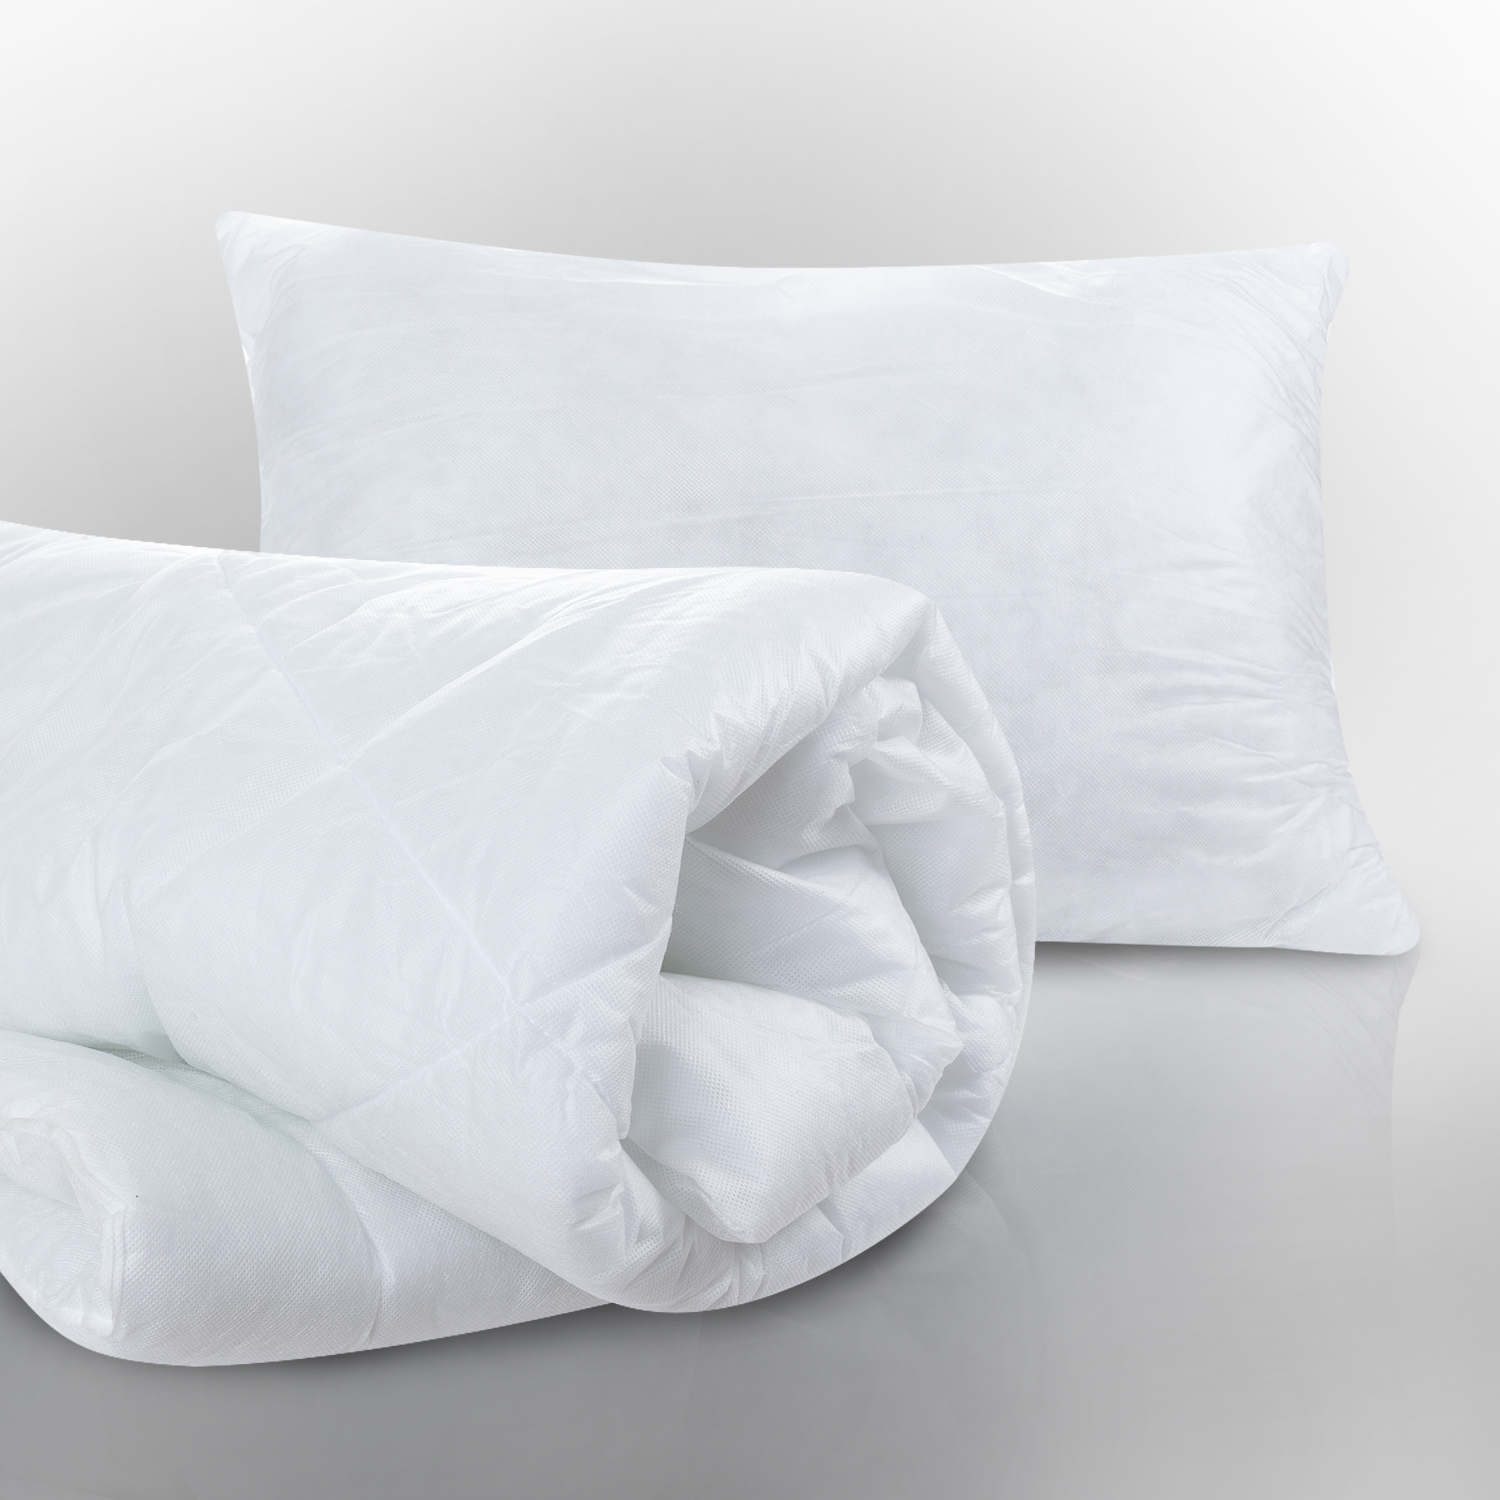 Набор Зима-Лето: 2 подушки и одеяло (50х70 см - 2 шт, 200х220 см), размер 50х70 (2 шт)